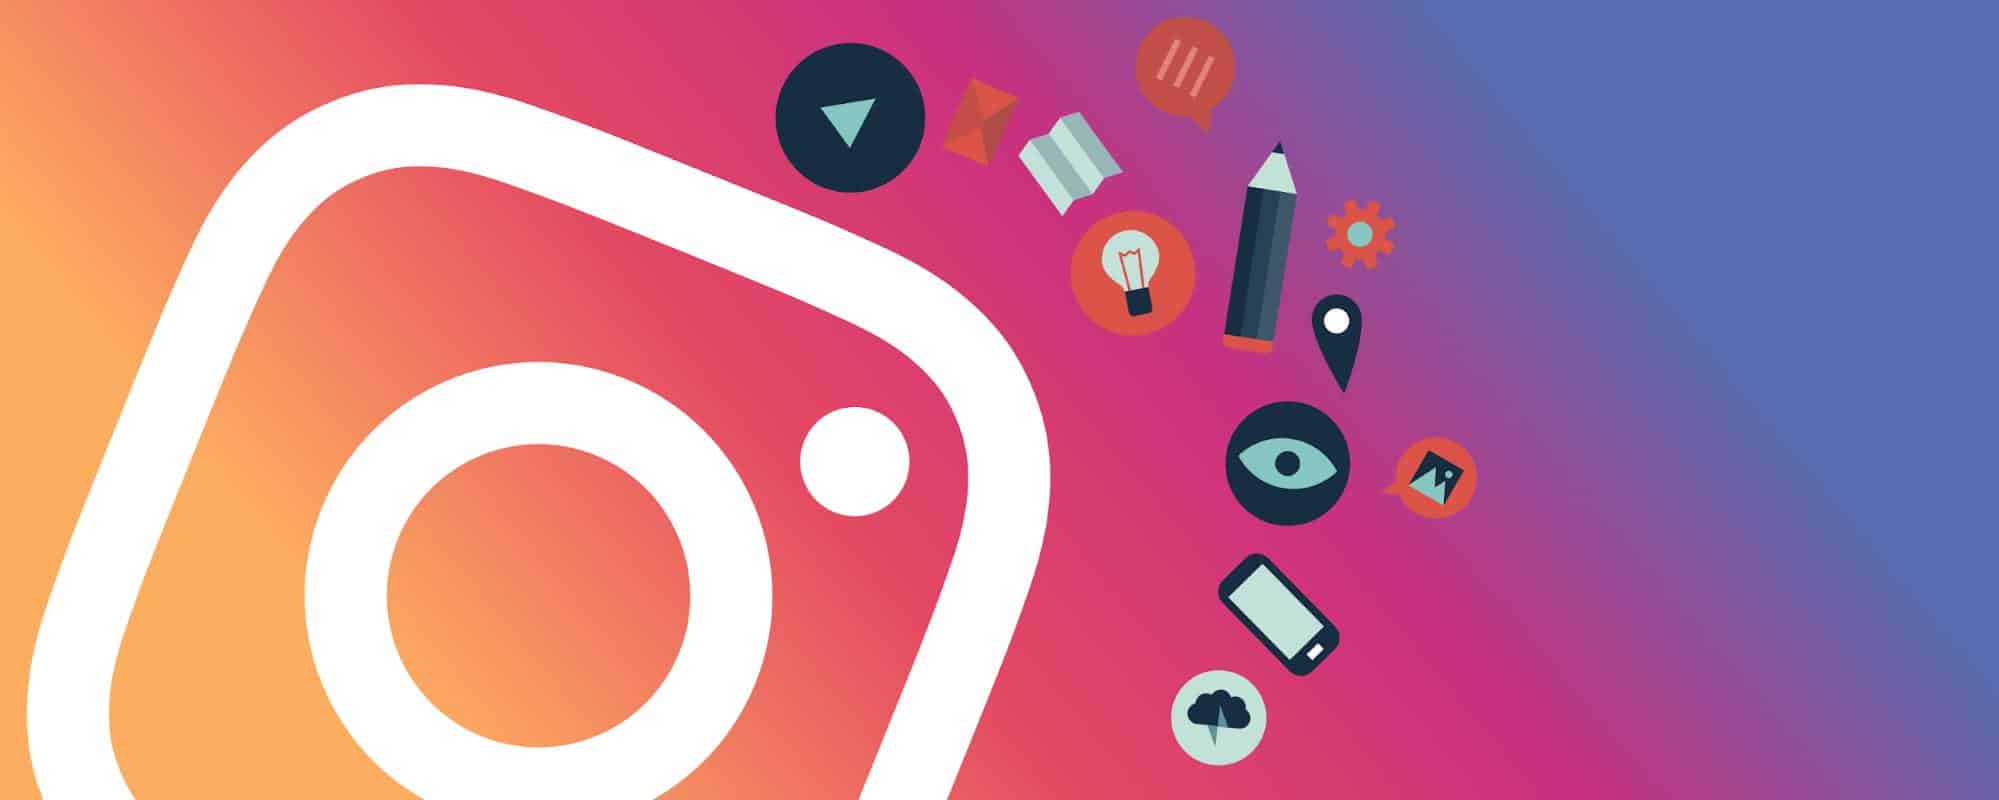 Instagram có điểm gì nổi bật so với Facebook​?